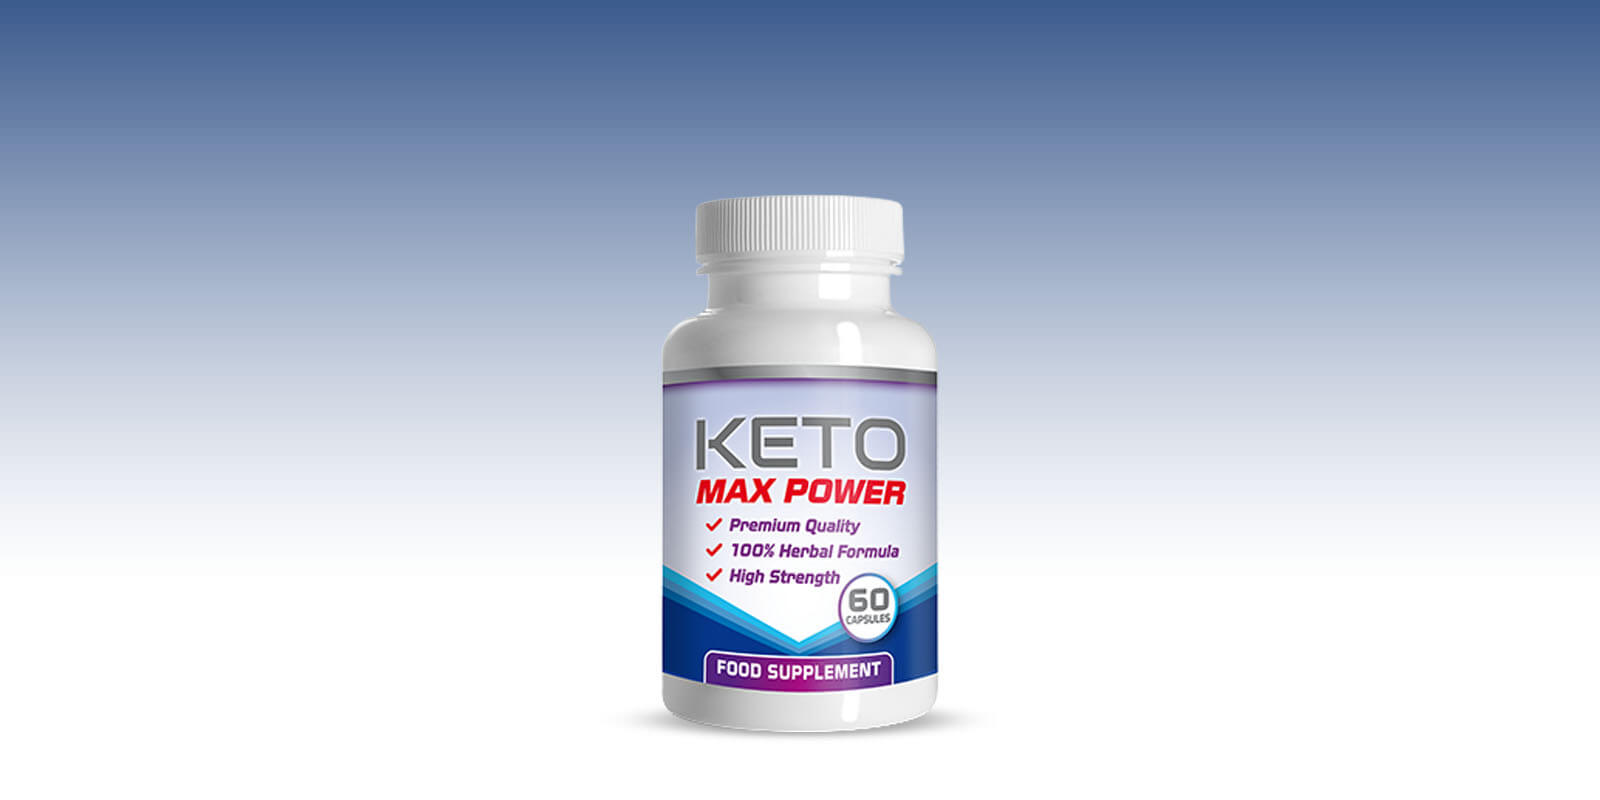 Keto Max Power Reviews: